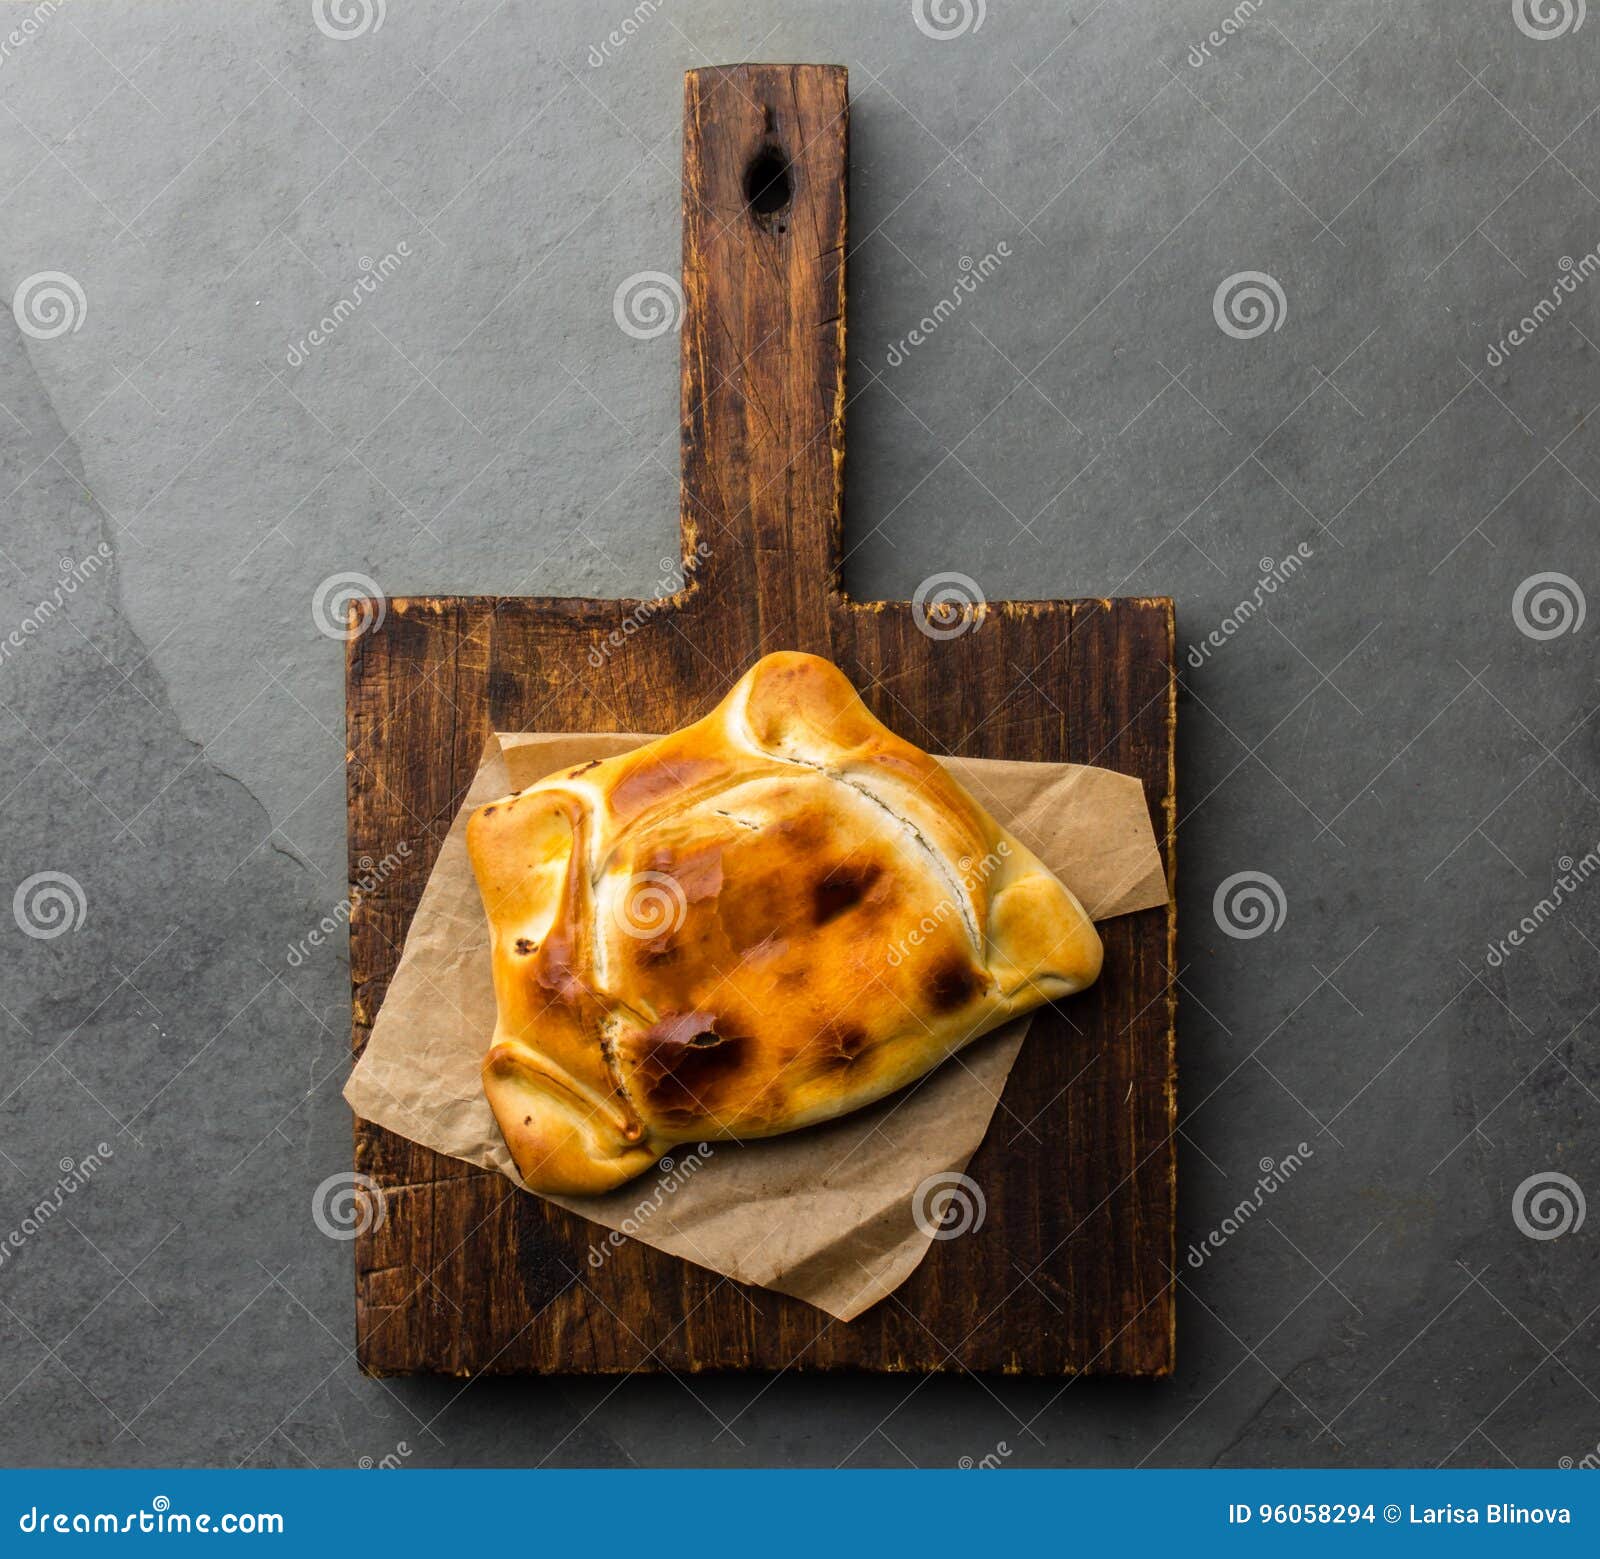 chilean empanada de pino on wooden board